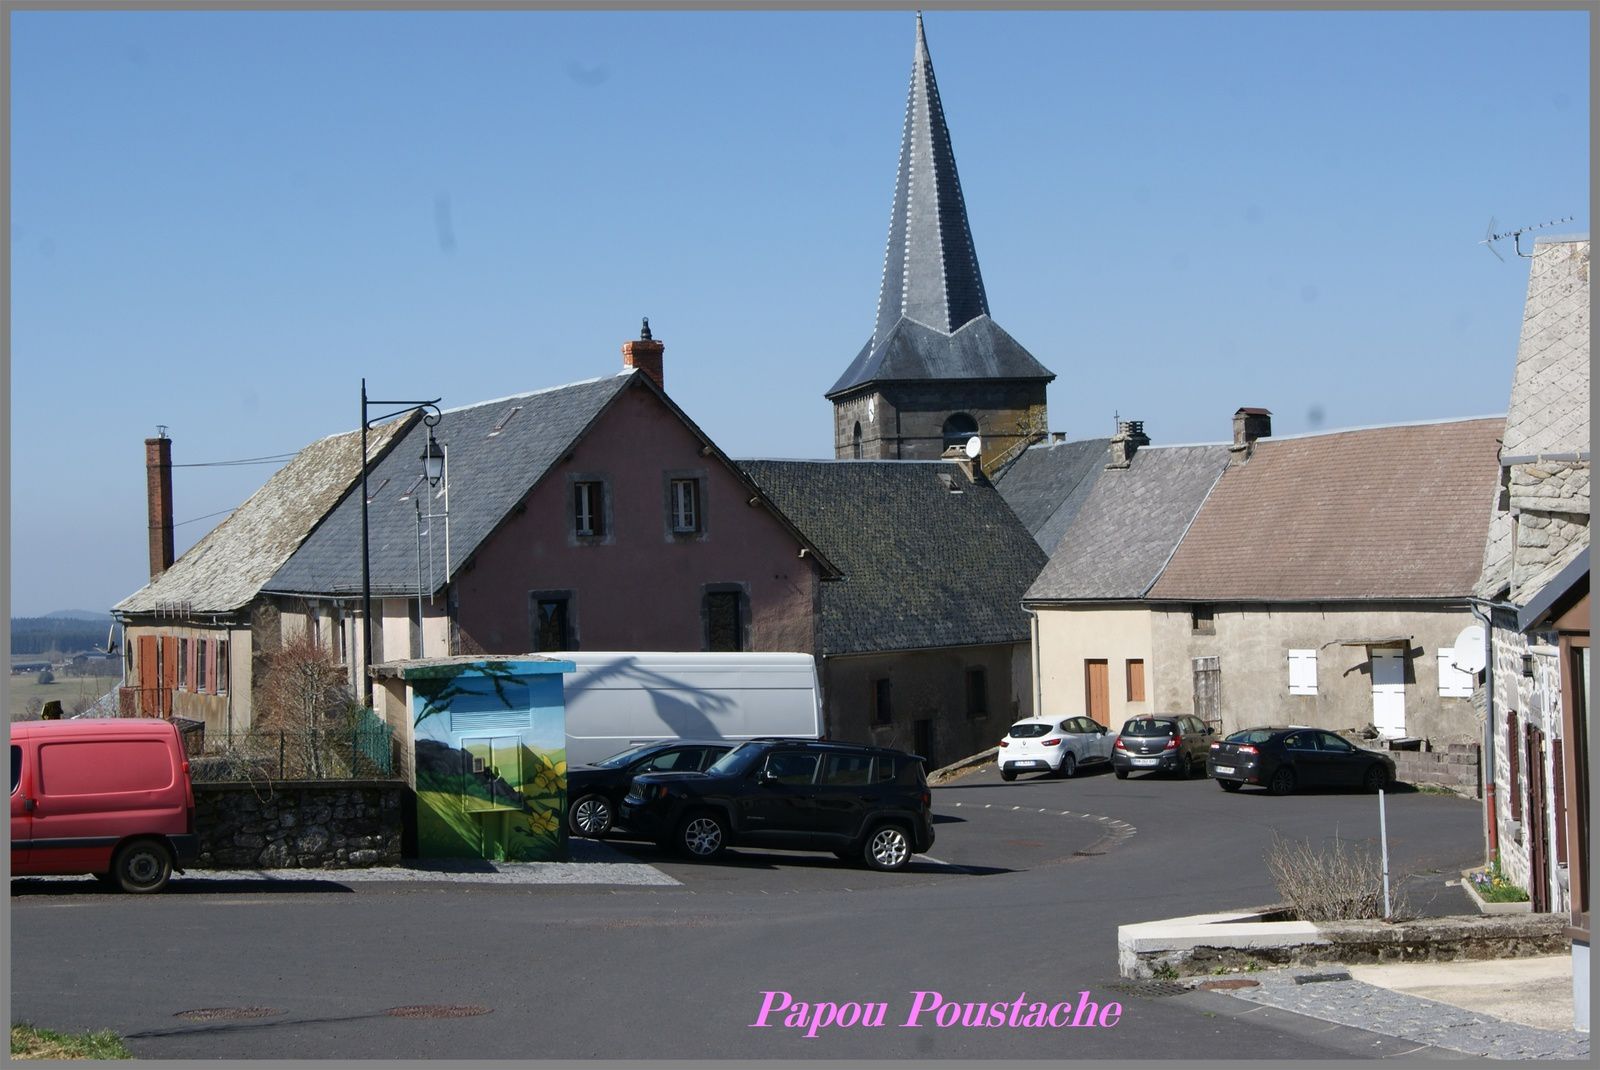 Voici les photos du village de Laqueuille et des alentours.  Pour rappel, et pour situer ces images dans leur contexte, Laqueuille est situé dans le département du Puy-de-Dôme de la région Auvergne Rhône Alpes  et a une surface de 22.07 km ² pour une population de 392 habitants.